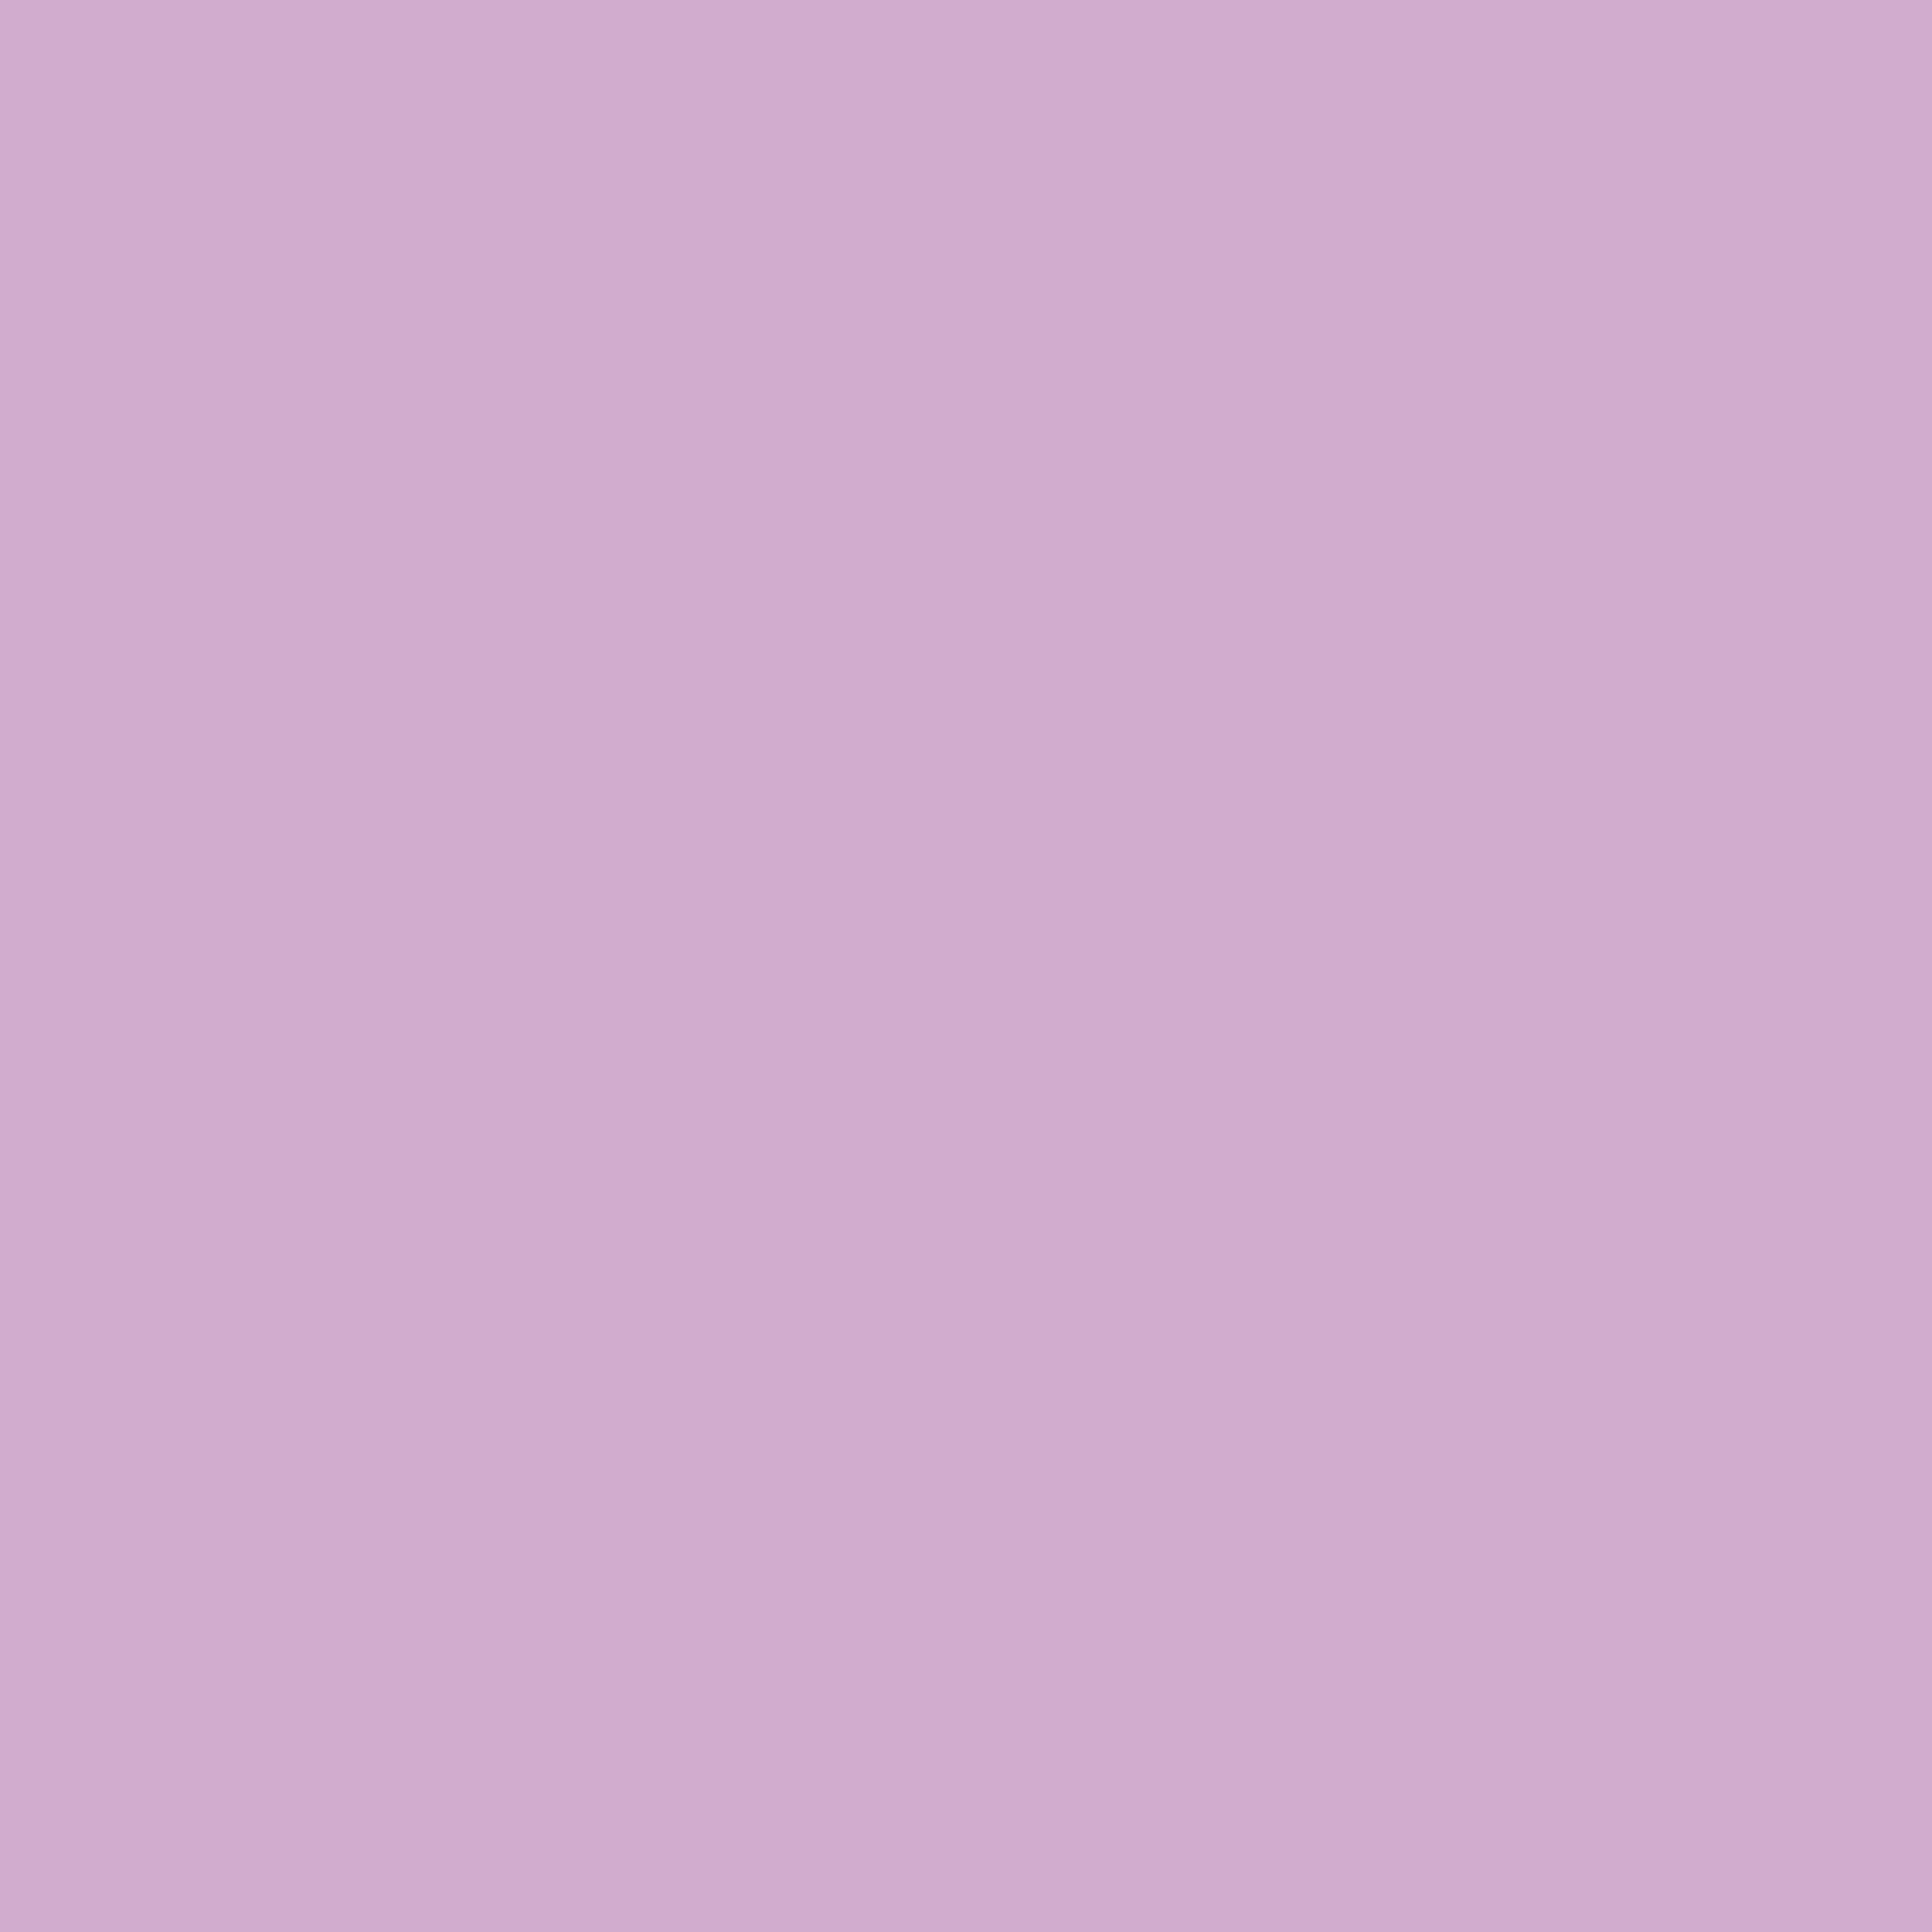 #colour_soft lavender